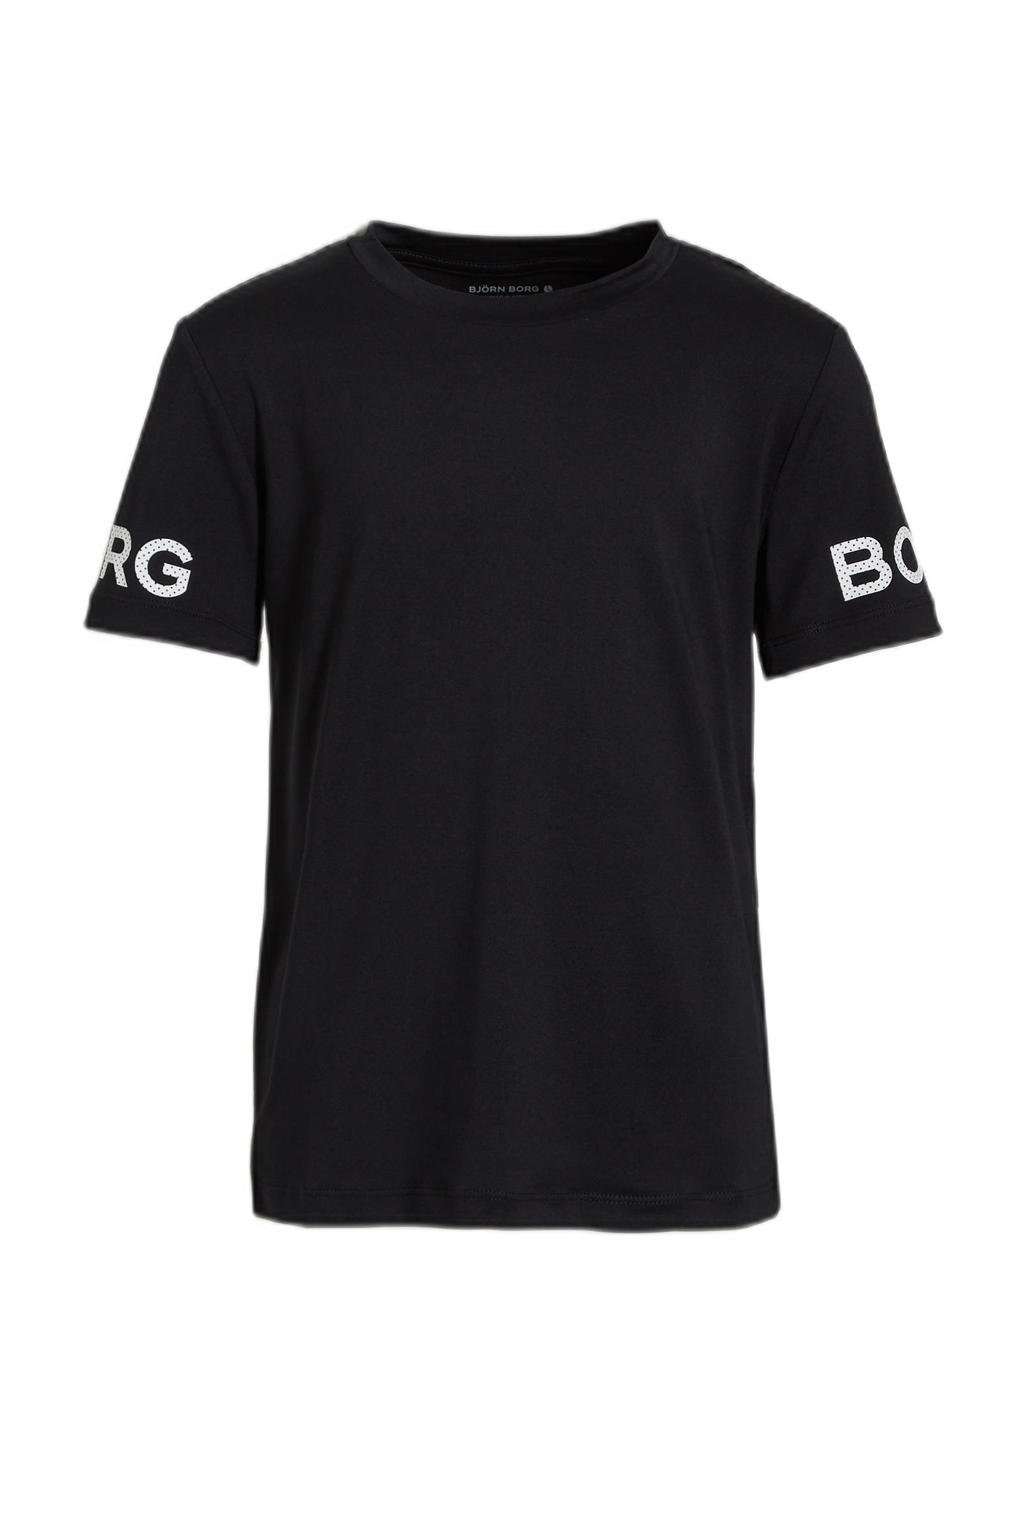 Zwarte jongens Björn Borg sport T-shirt van gerecycled polyester met camouflageprint, korte mouwen en ronde hals